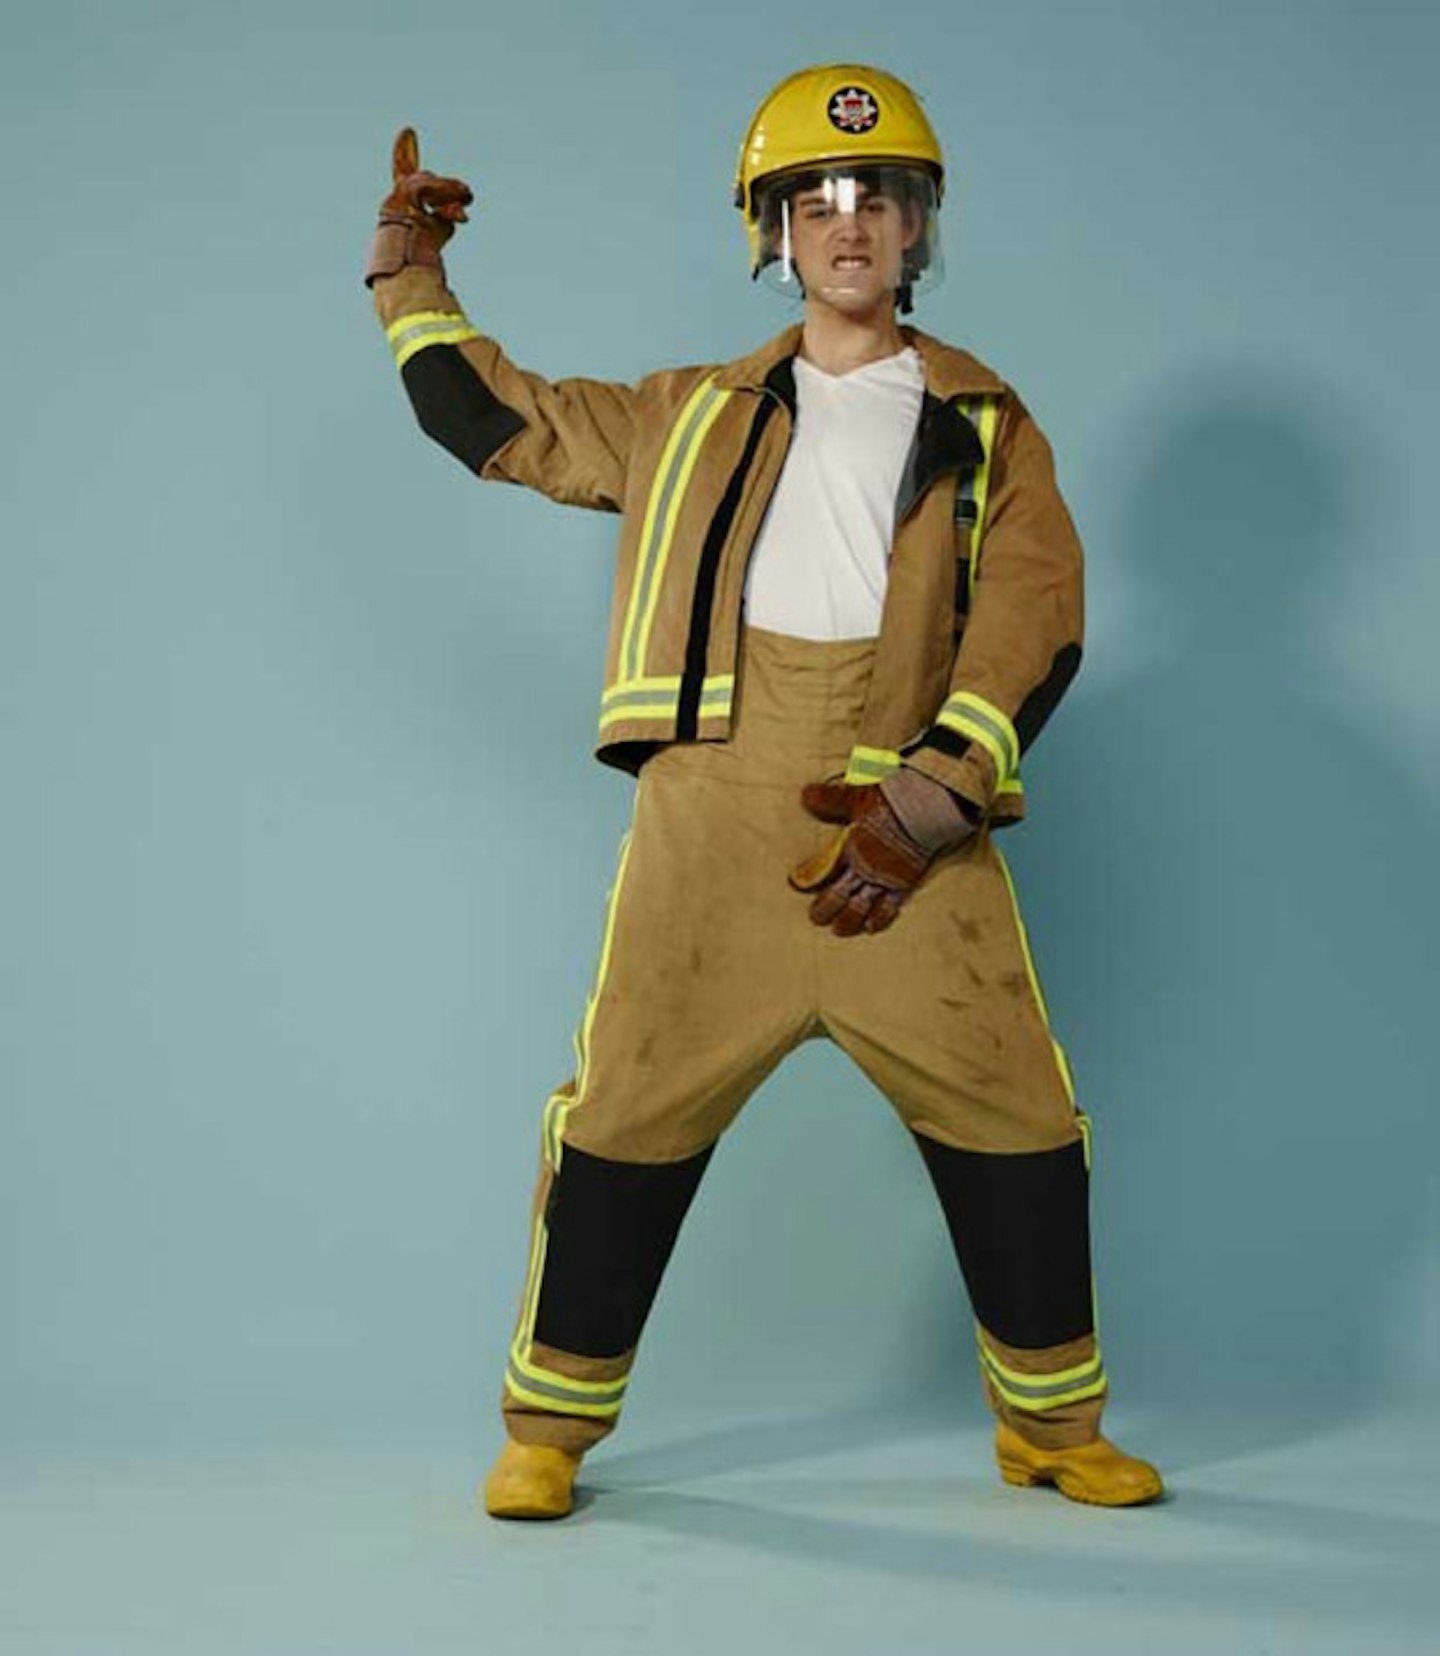 matt-richardson-fireman-dancing-heat